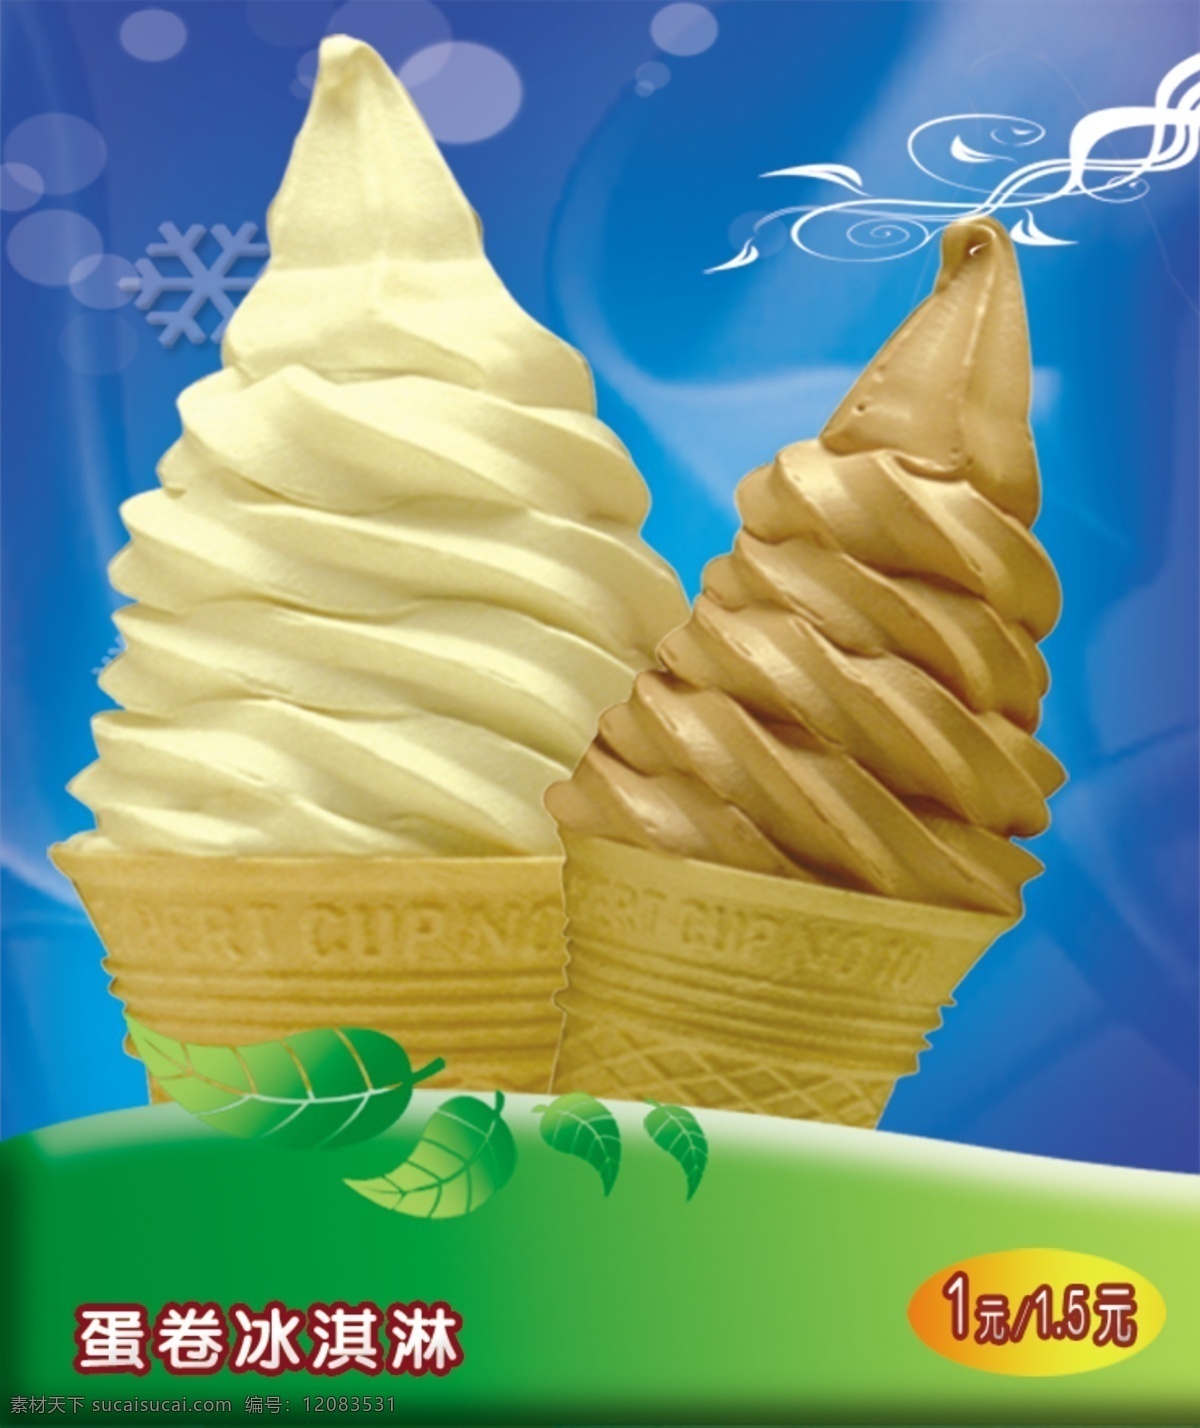 蛋卷冰淇淋 绿叶 花边 蓝色背景 冰淇淋 psd源文件 餐饮素材